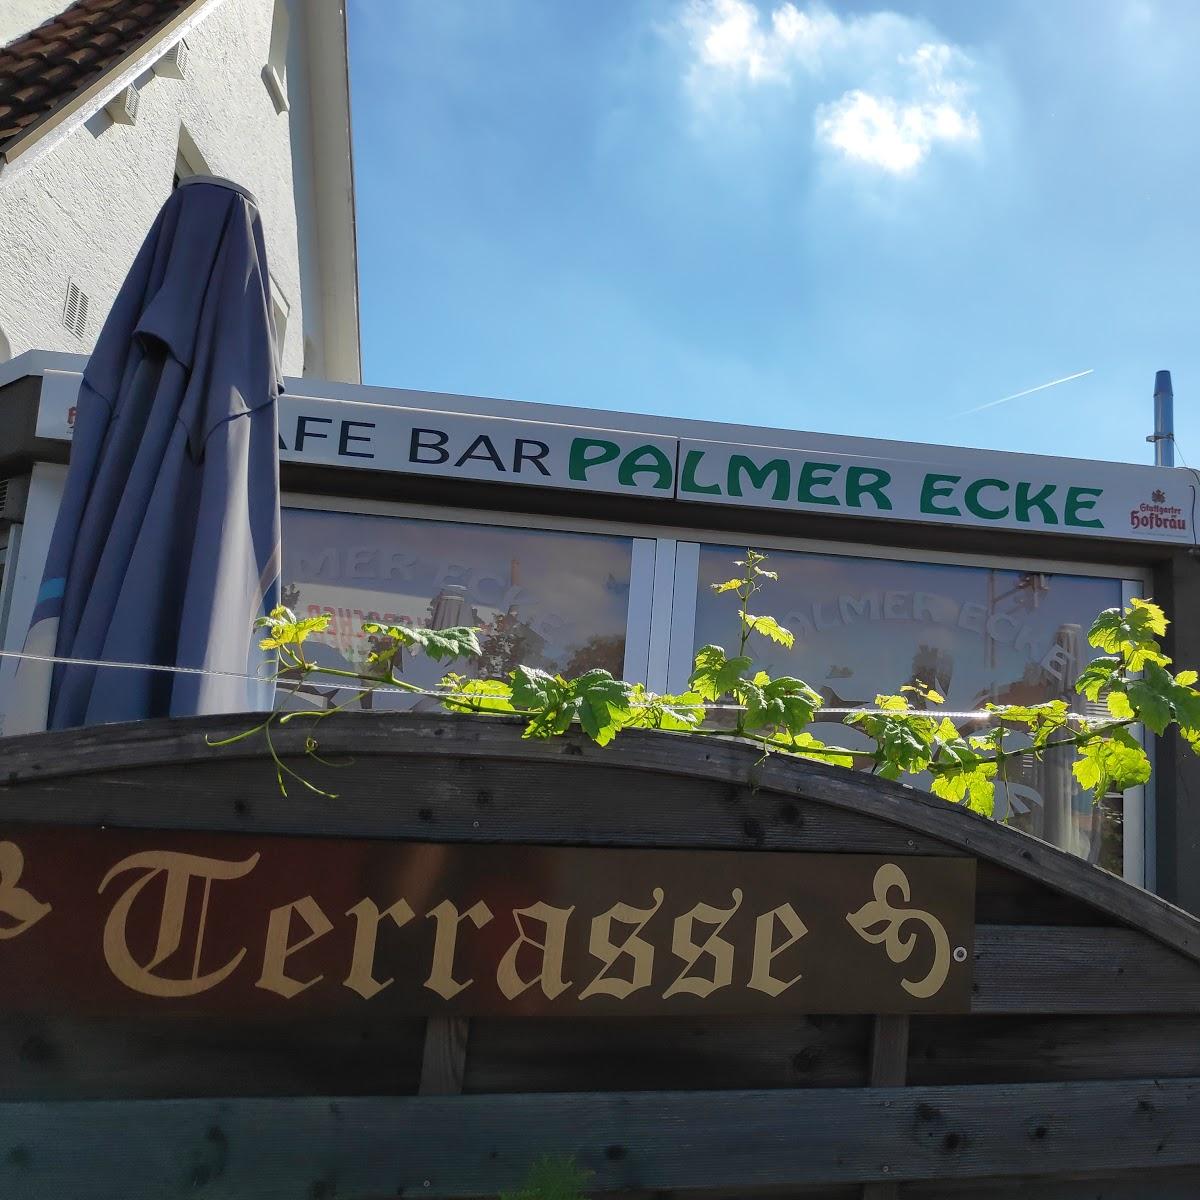 Restaurant "Palmer Eck Bistro" in Weinstadt